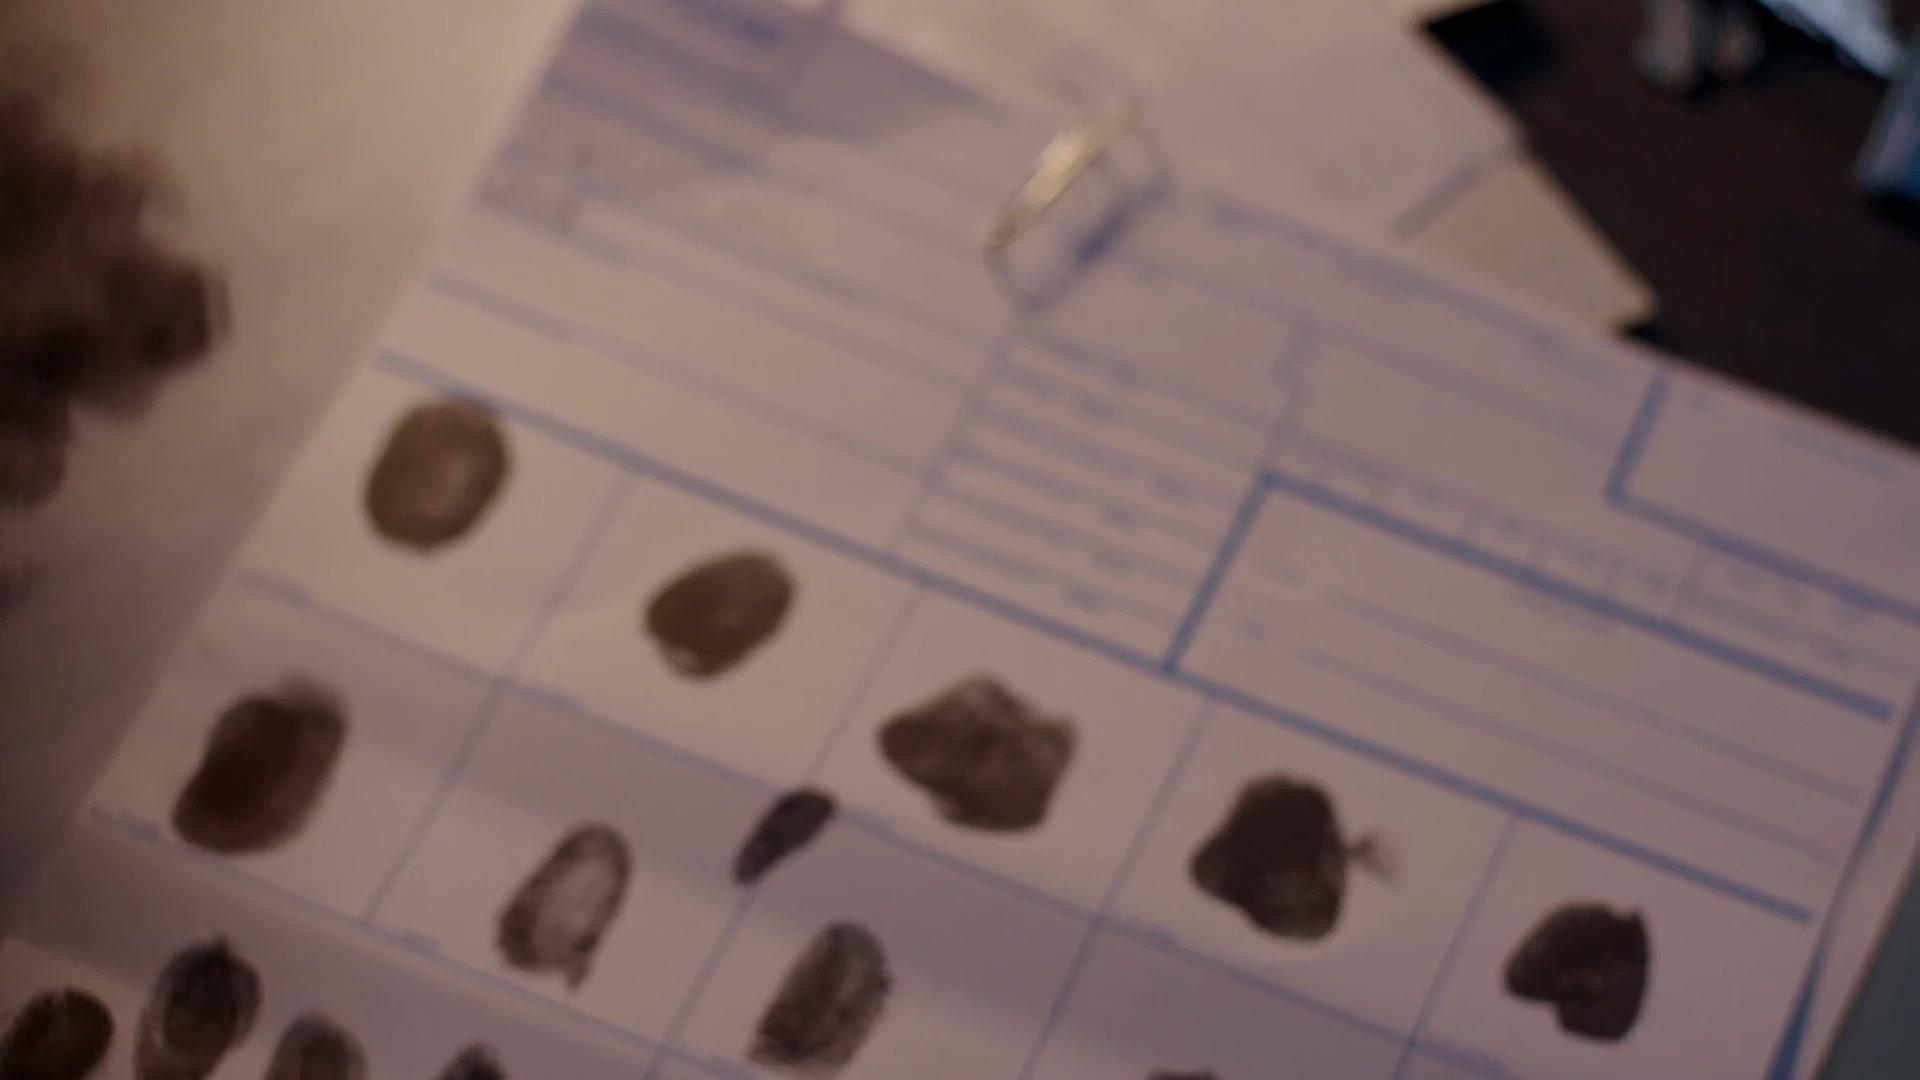 Fingerprint Provides Clue in Killing of Helen Mintiks